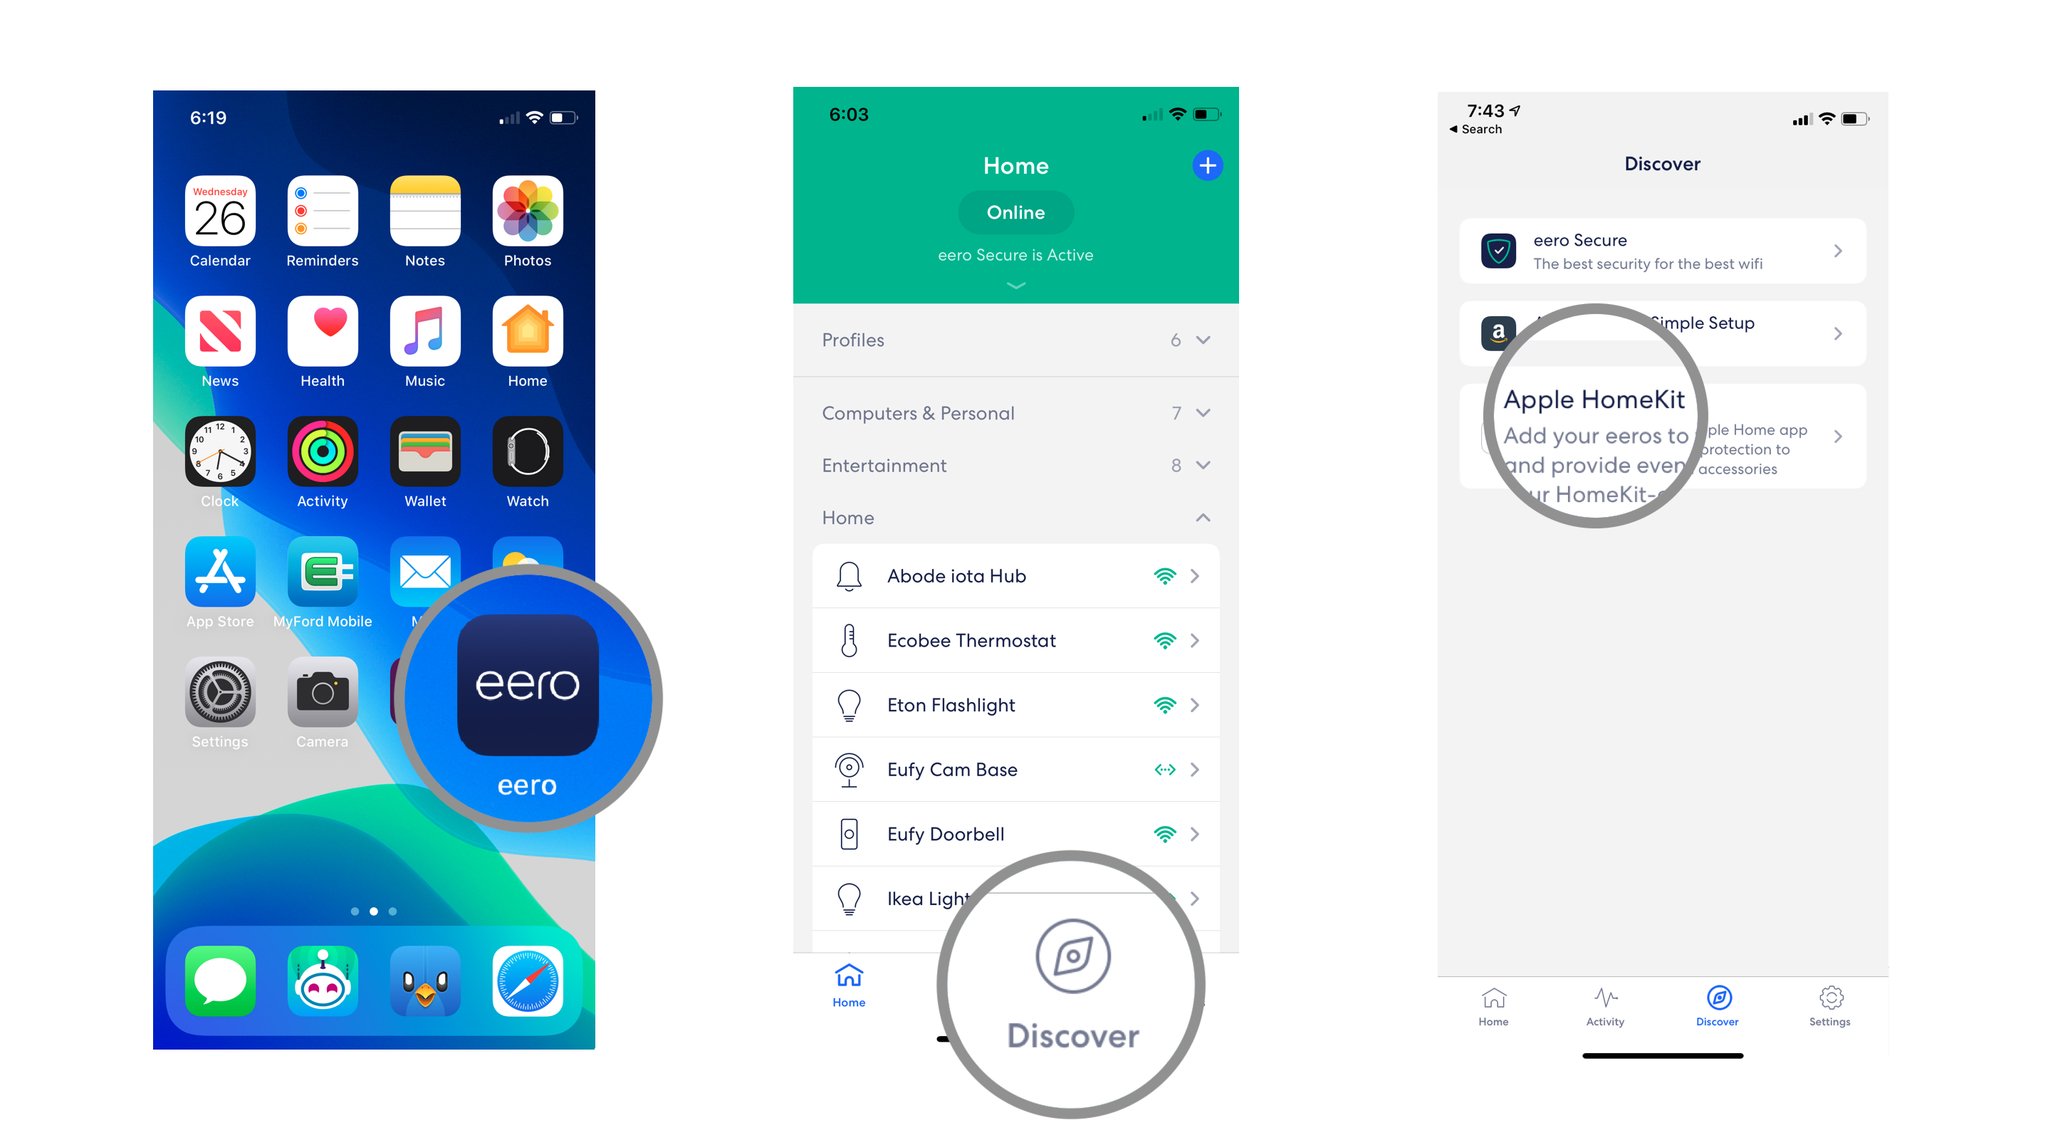 Launch Eero app, tap Discover, Tap Apple HomeKit